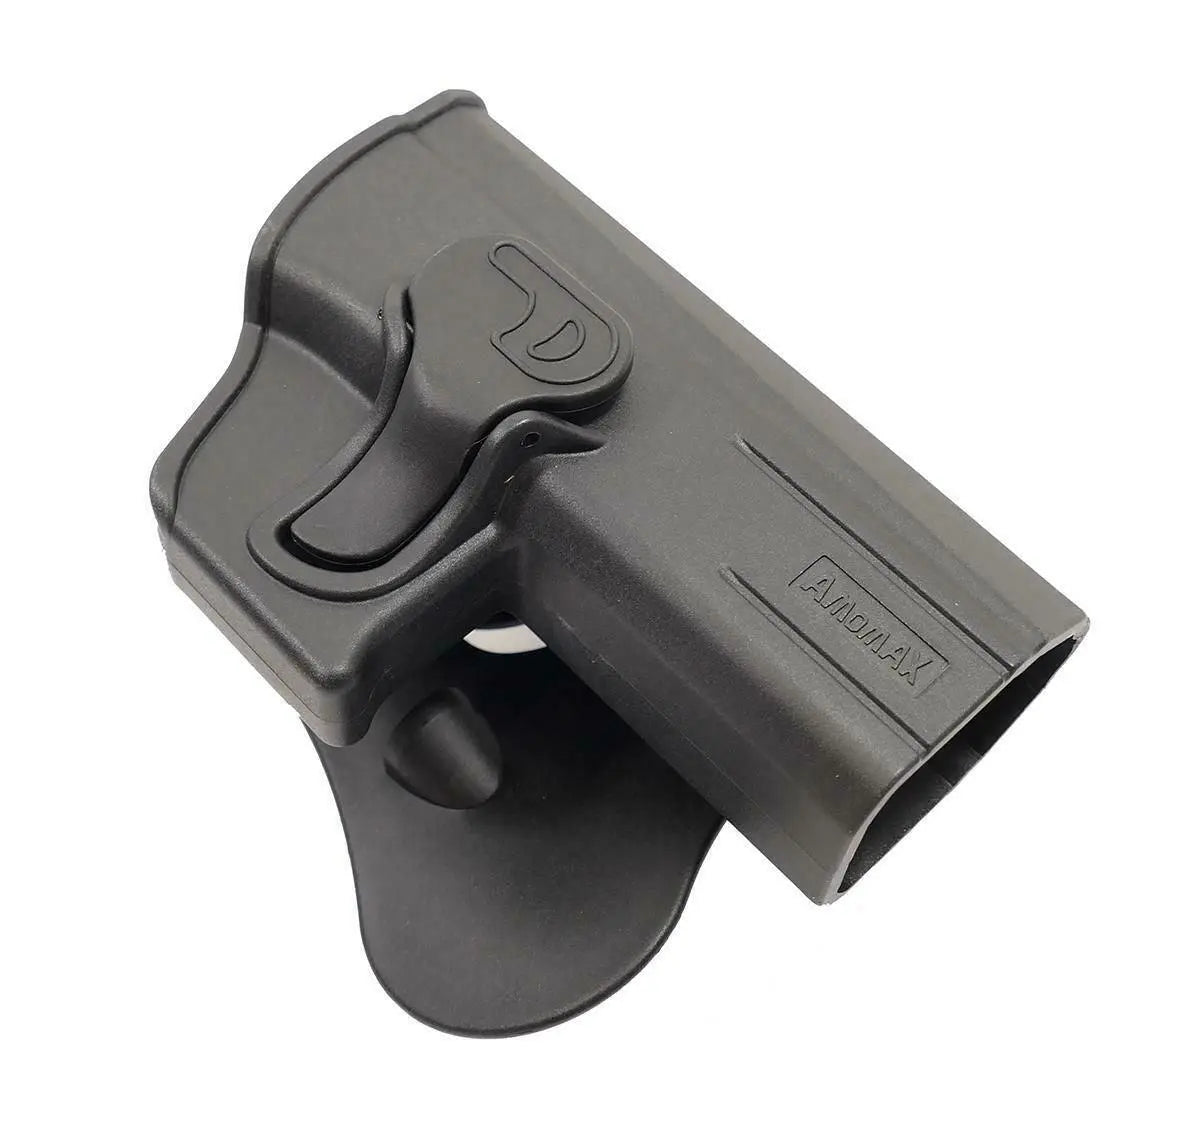 Paddle holster pistol CZ P-07 / P-09 retentie activa AMOMAX WARZONESHOP